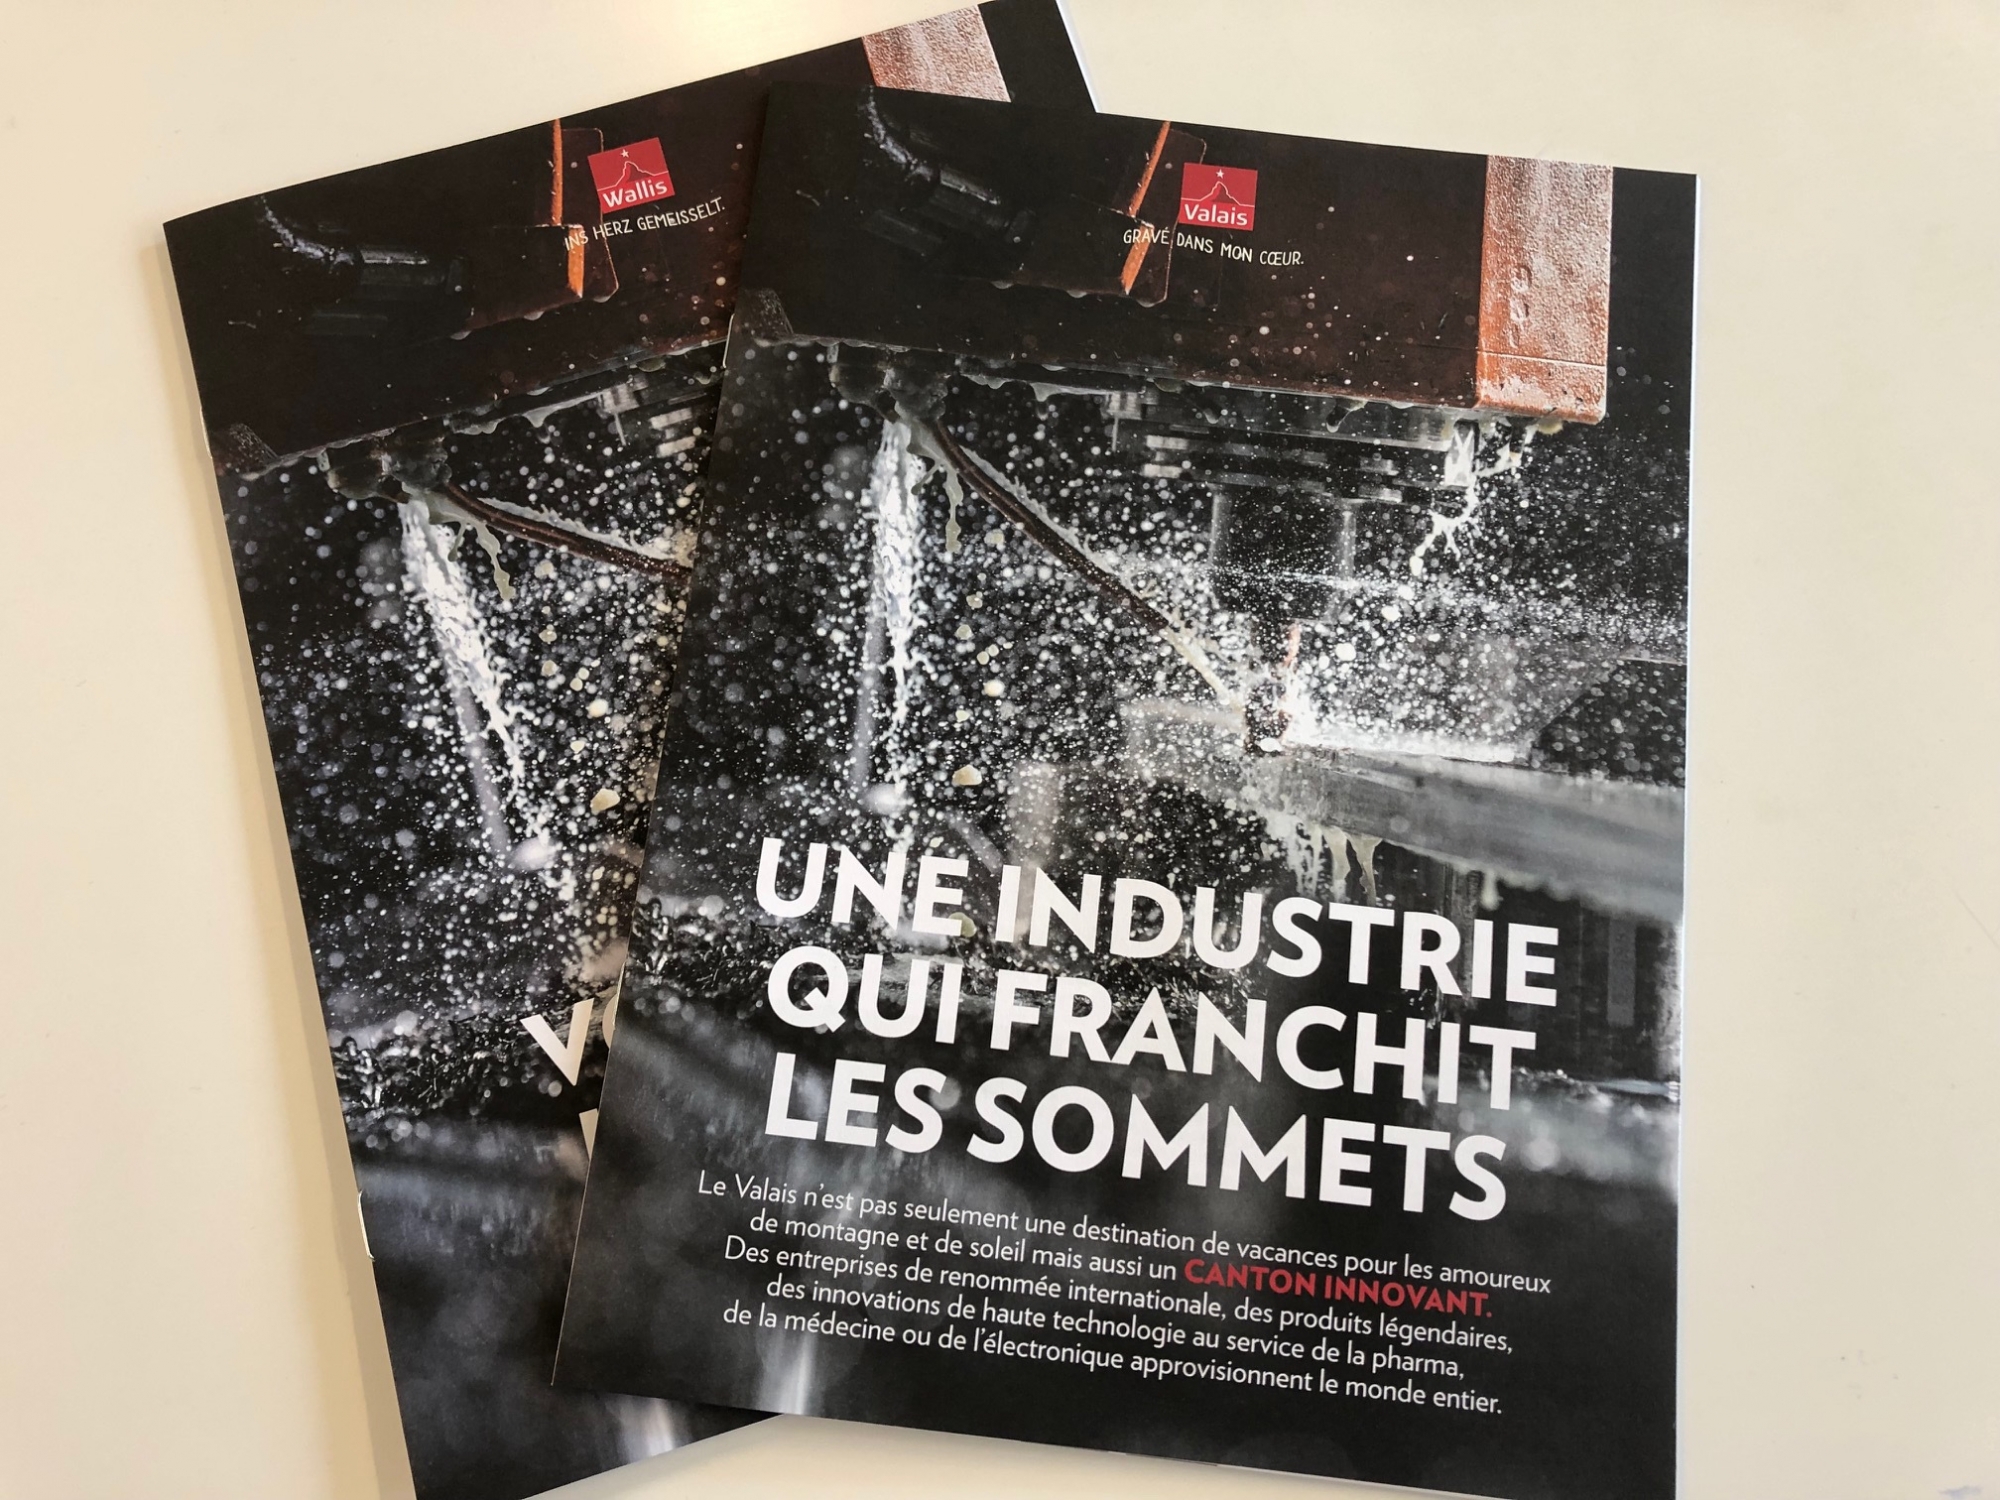 Une brochure présentant le Valais industriel et innovant a été distribuée en Valais.